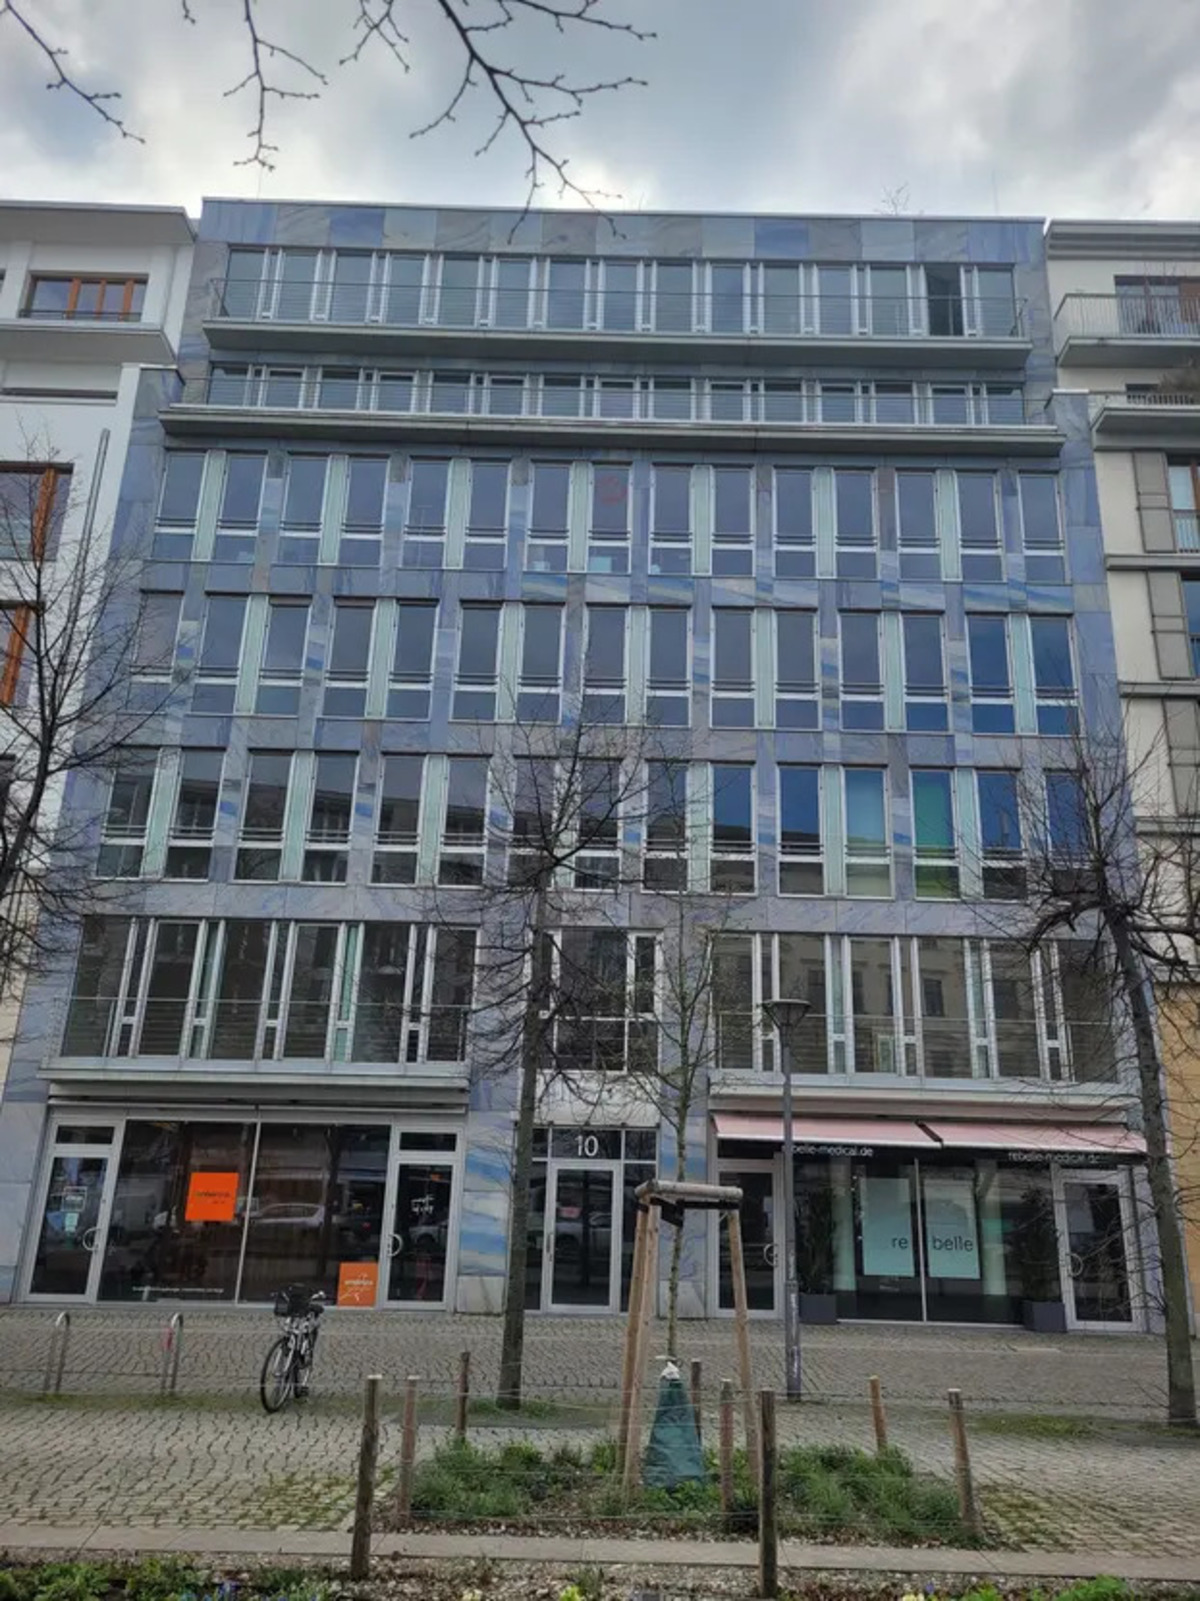 Büro 3zAR Monbijouplatz 9 in Berlin, Mitte